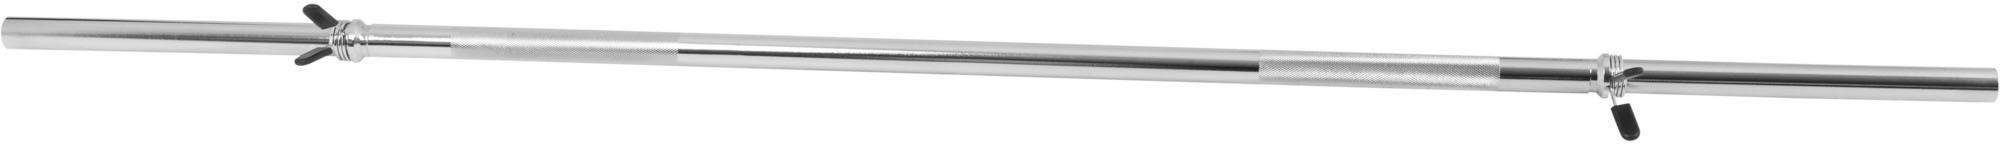 GORILLA SPORTS Langhantelstange Langhantelstange Chrom 170 cm mit Federverschluss, Chrom, 170 cm (mit Federklemmen)